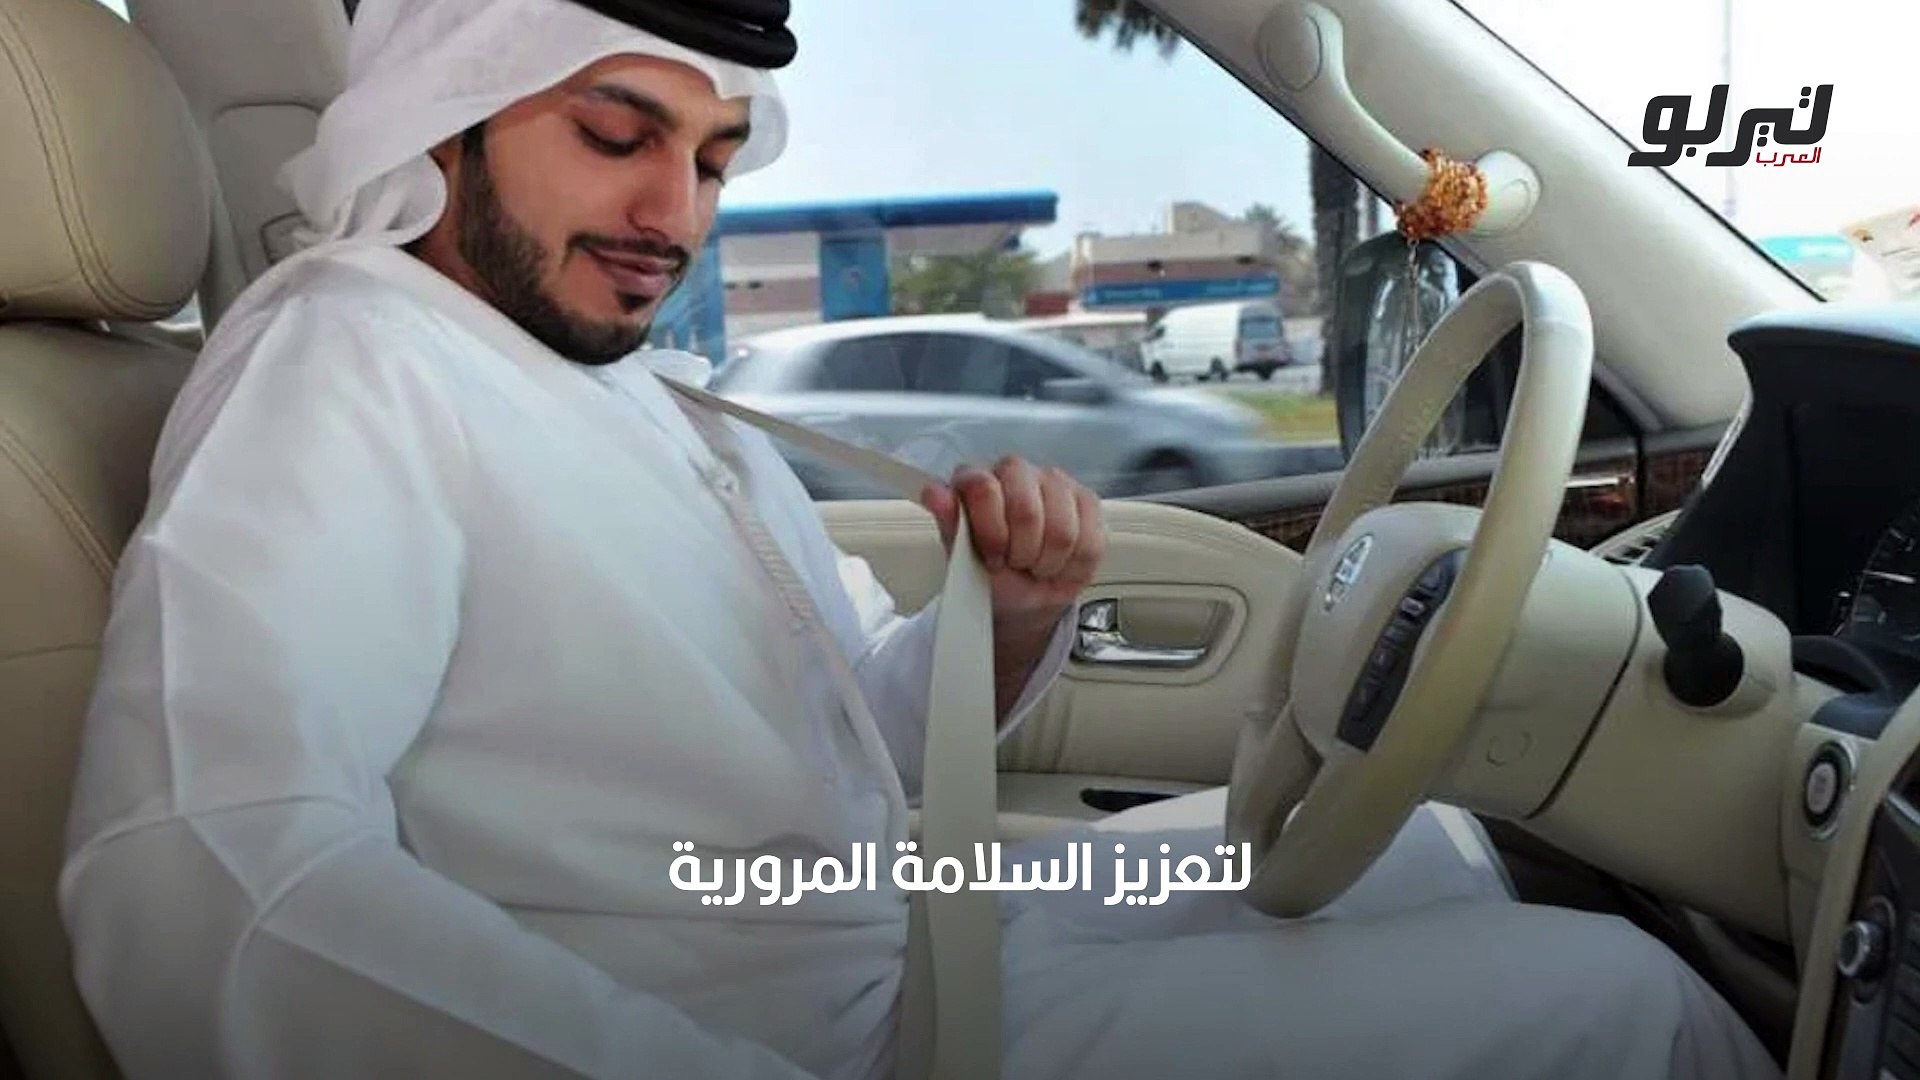 تعرف على عقوبة عدم ربط حزام الأمان لقائد السيارة والركاب في أبوظبي - فيديو  Dailymotion